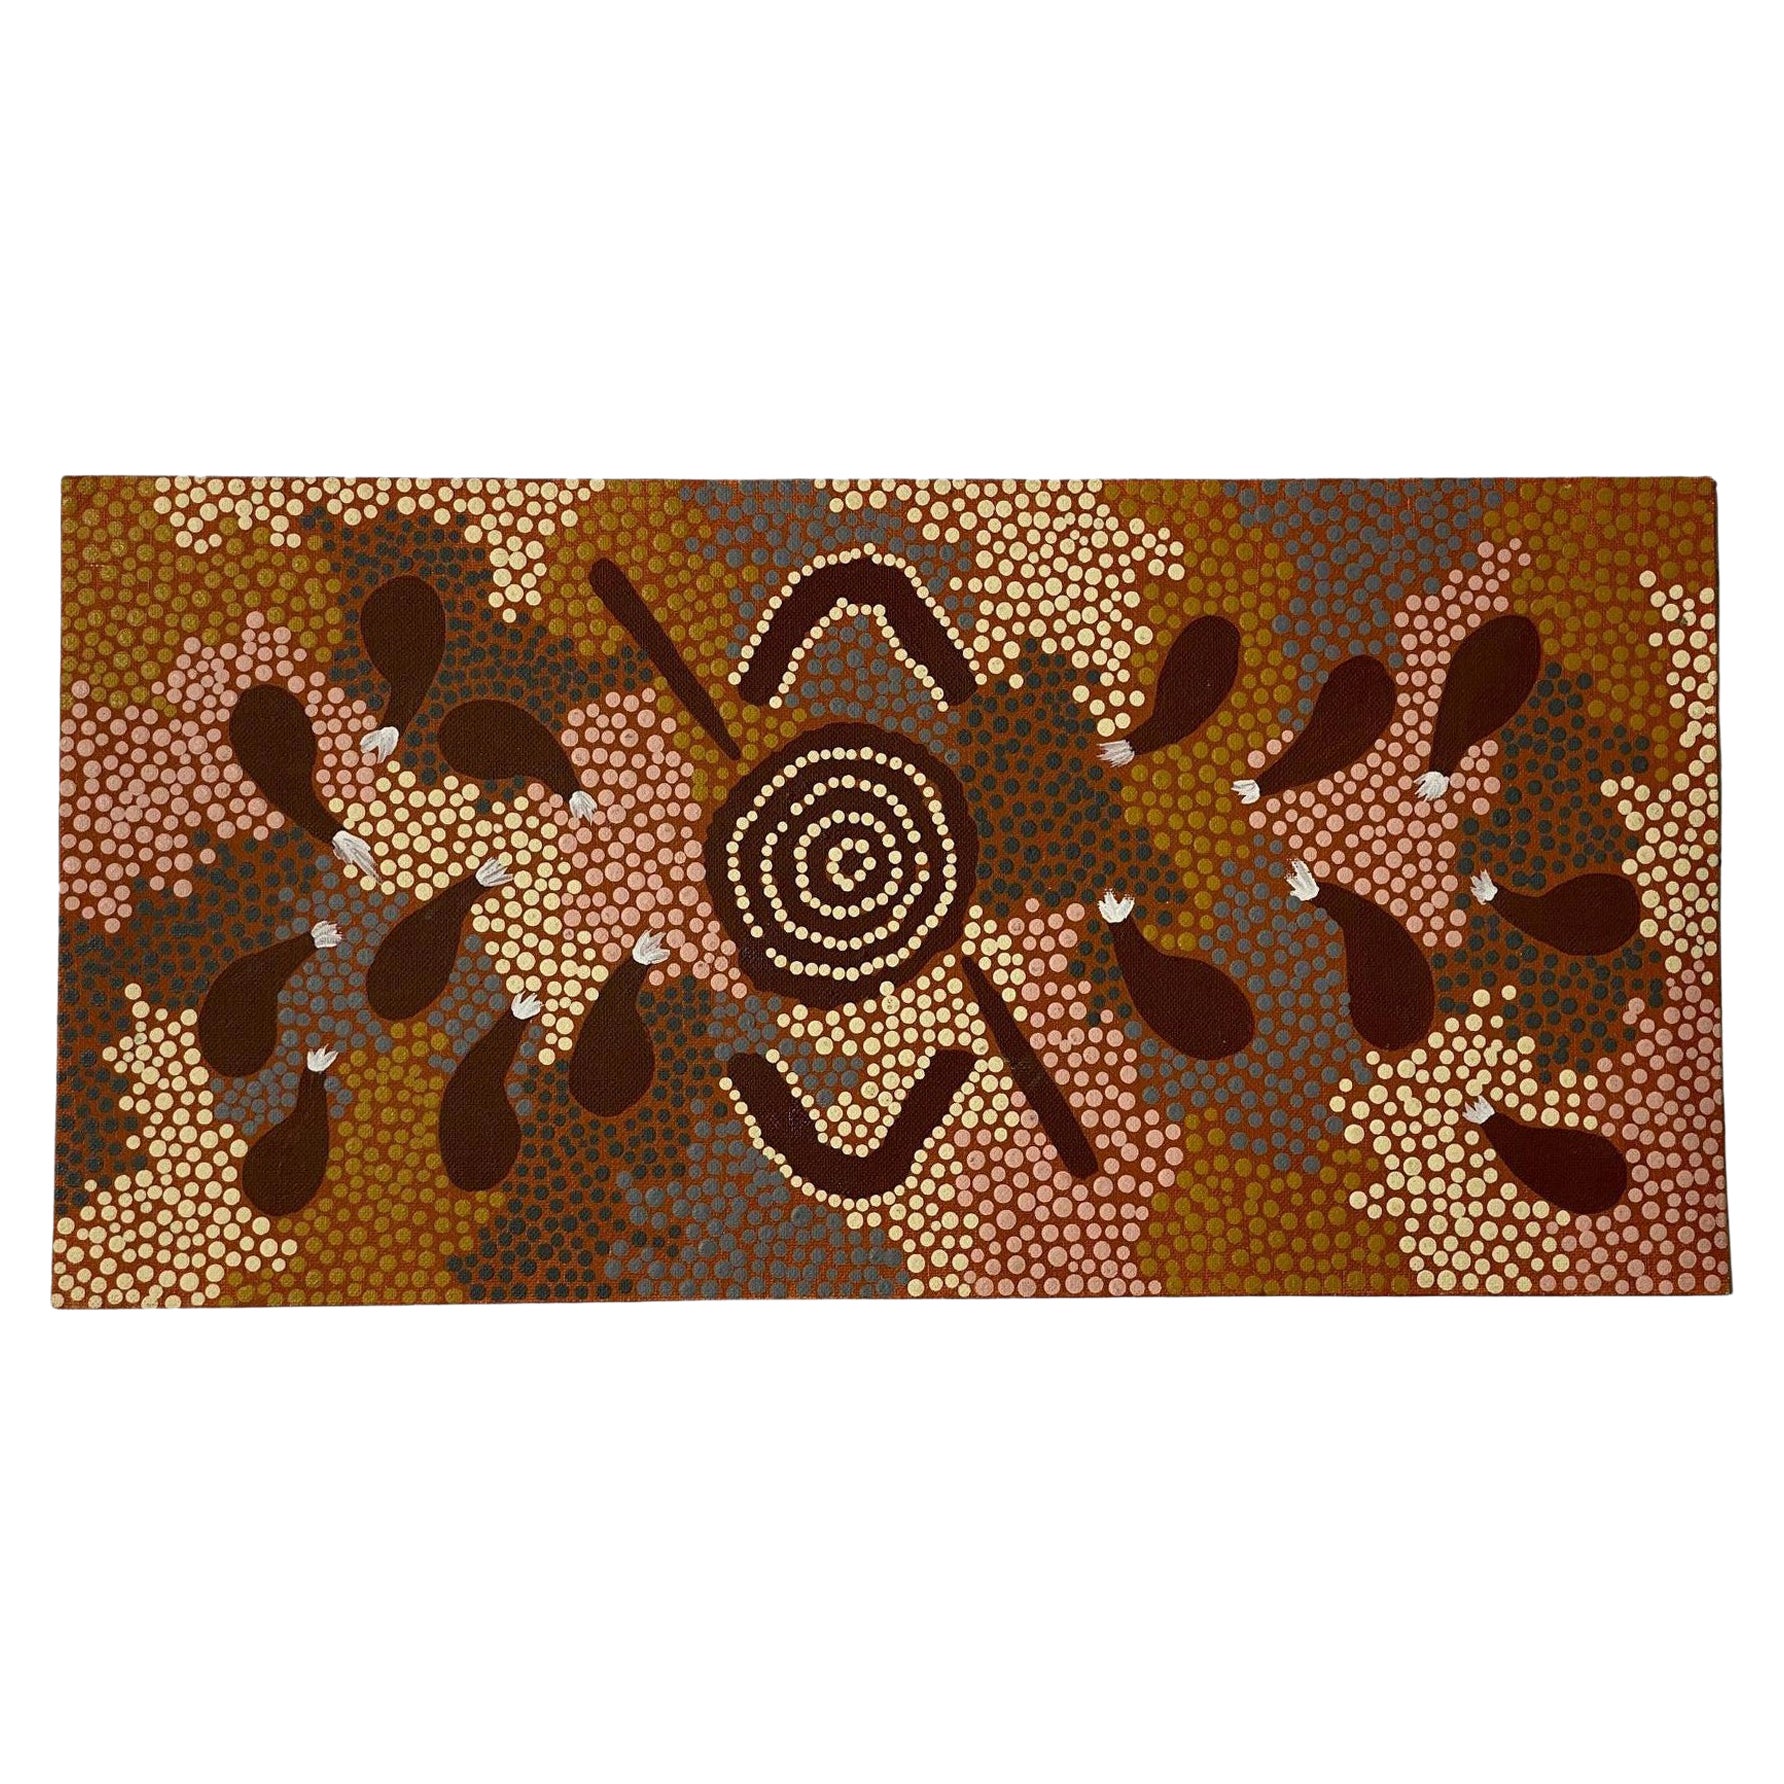 Clifford Possum, Tjapaltjarri, signiertes Originalgemälde der indigenen Kunst der Aborigines 